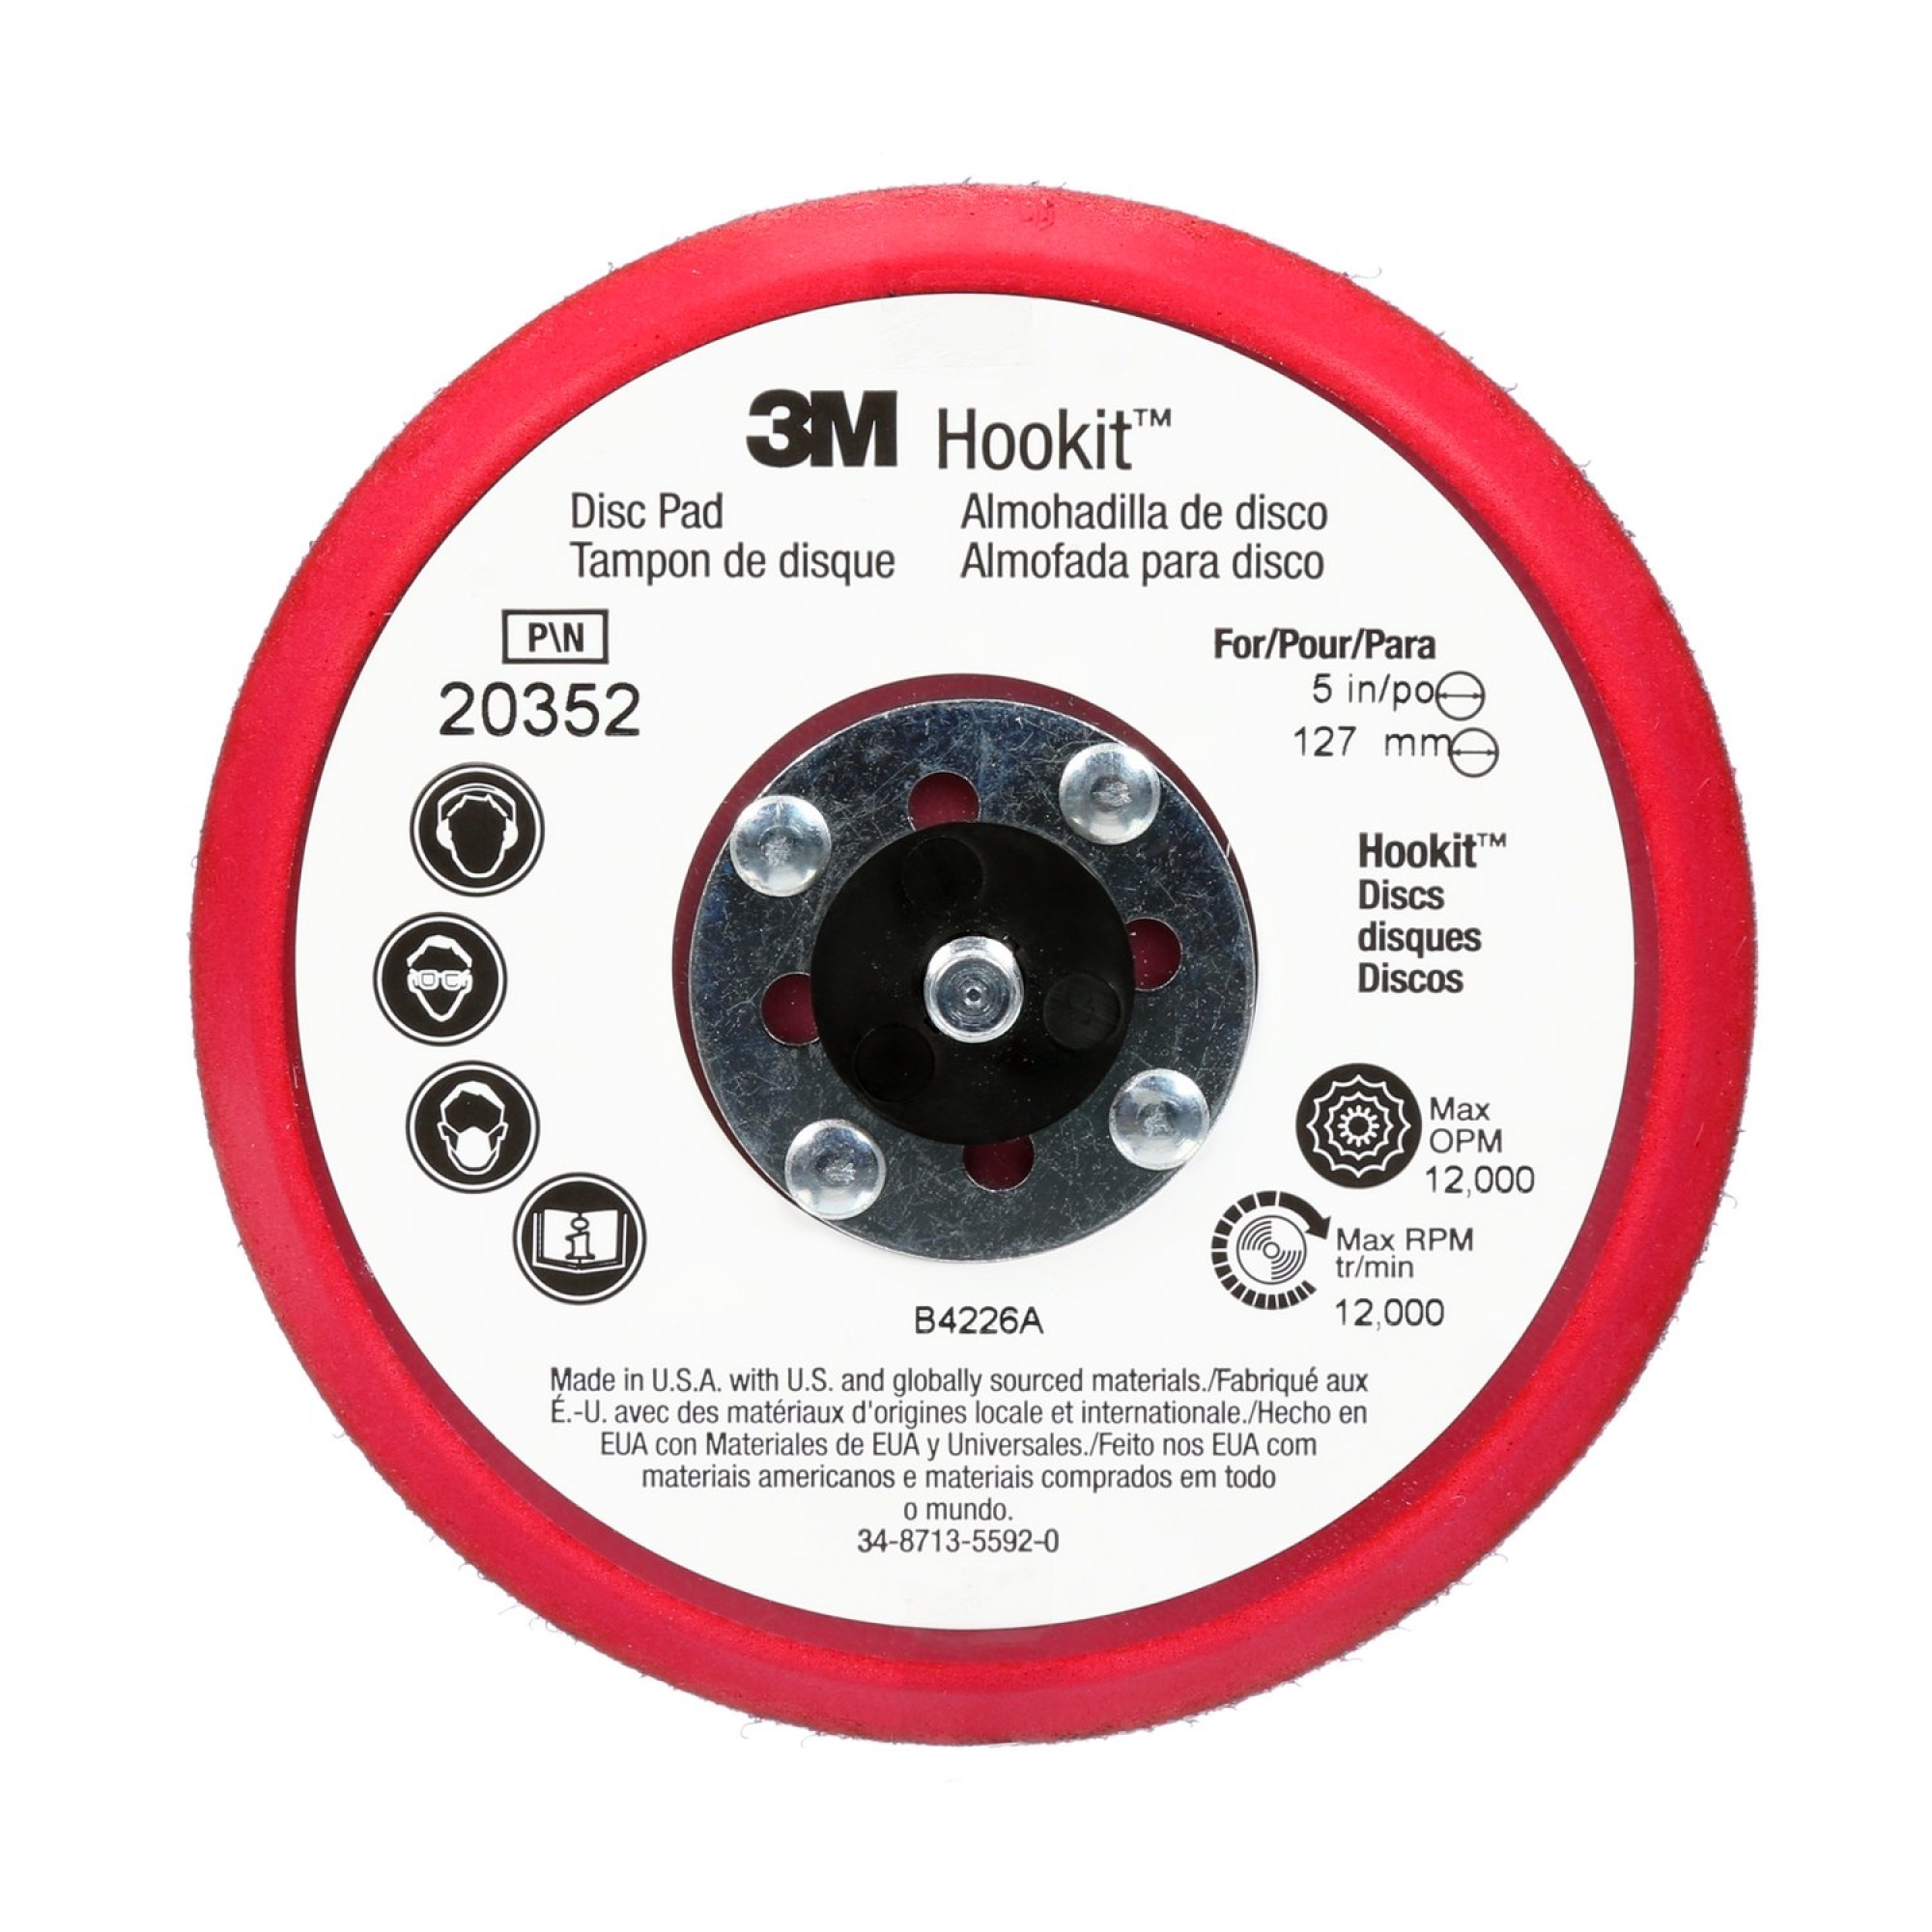 3M™ Hookit™ 20355, Ø 150 mm x 9,5 mm x 7,9 mm Stützteller mit Low Profile, Ungelocht in Rot, zur Aufnahme von kletthaftenden und selbstklebenden Schleifscheiben für den 3M™ Exzenterschleifer